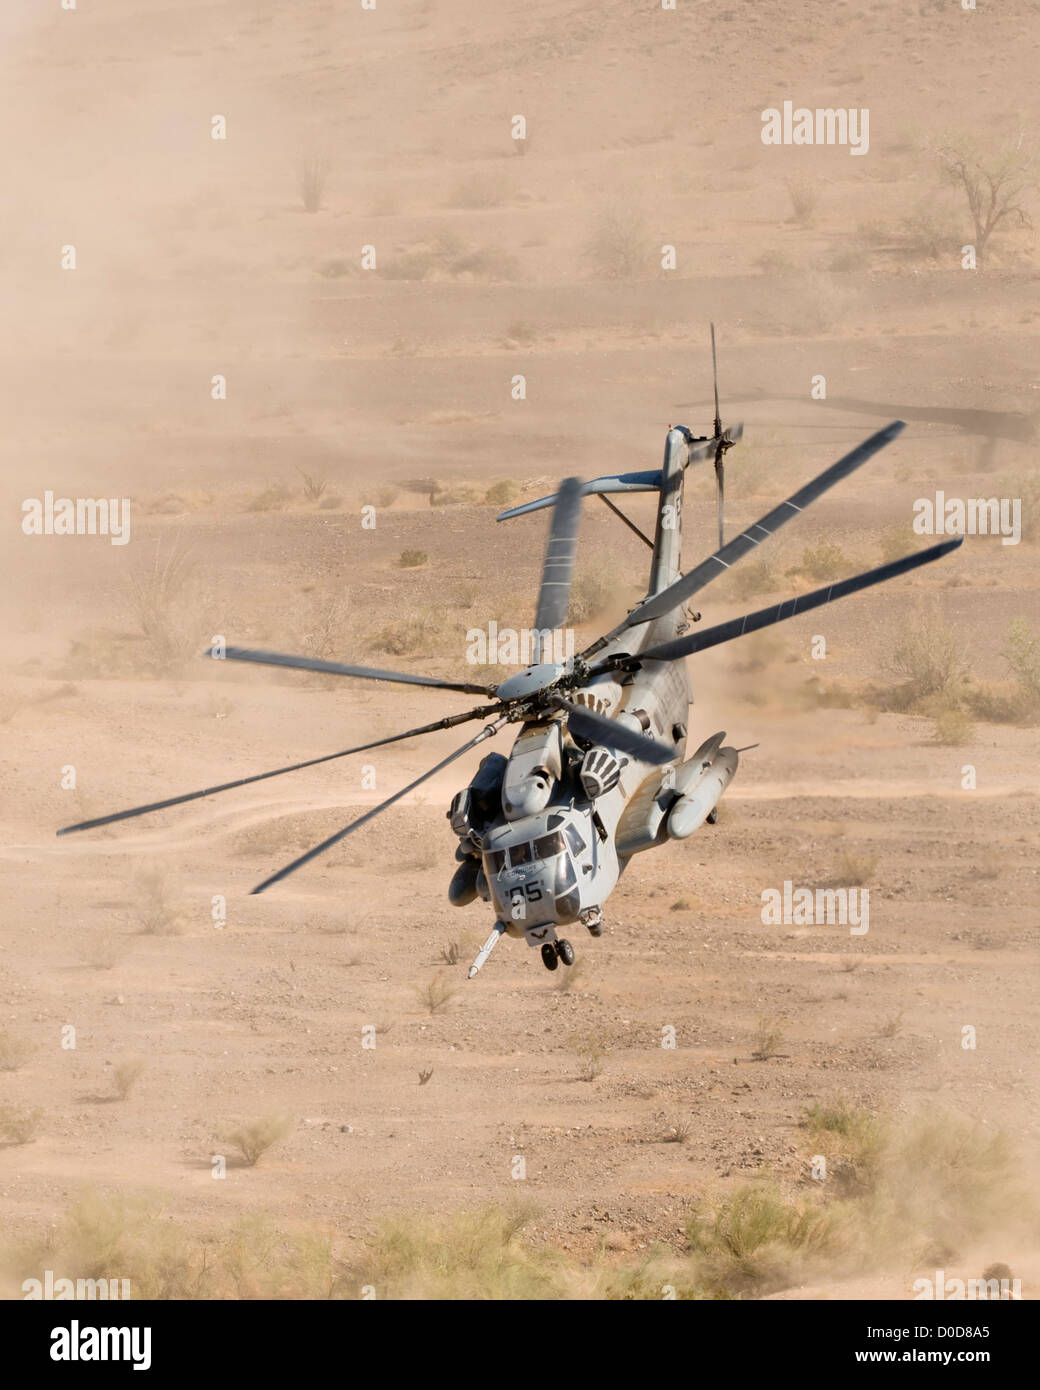 Un U.S. Marine Corps CH-53E rende un polveroso il decollo da un deserto zona di atterraggio Foto Stock